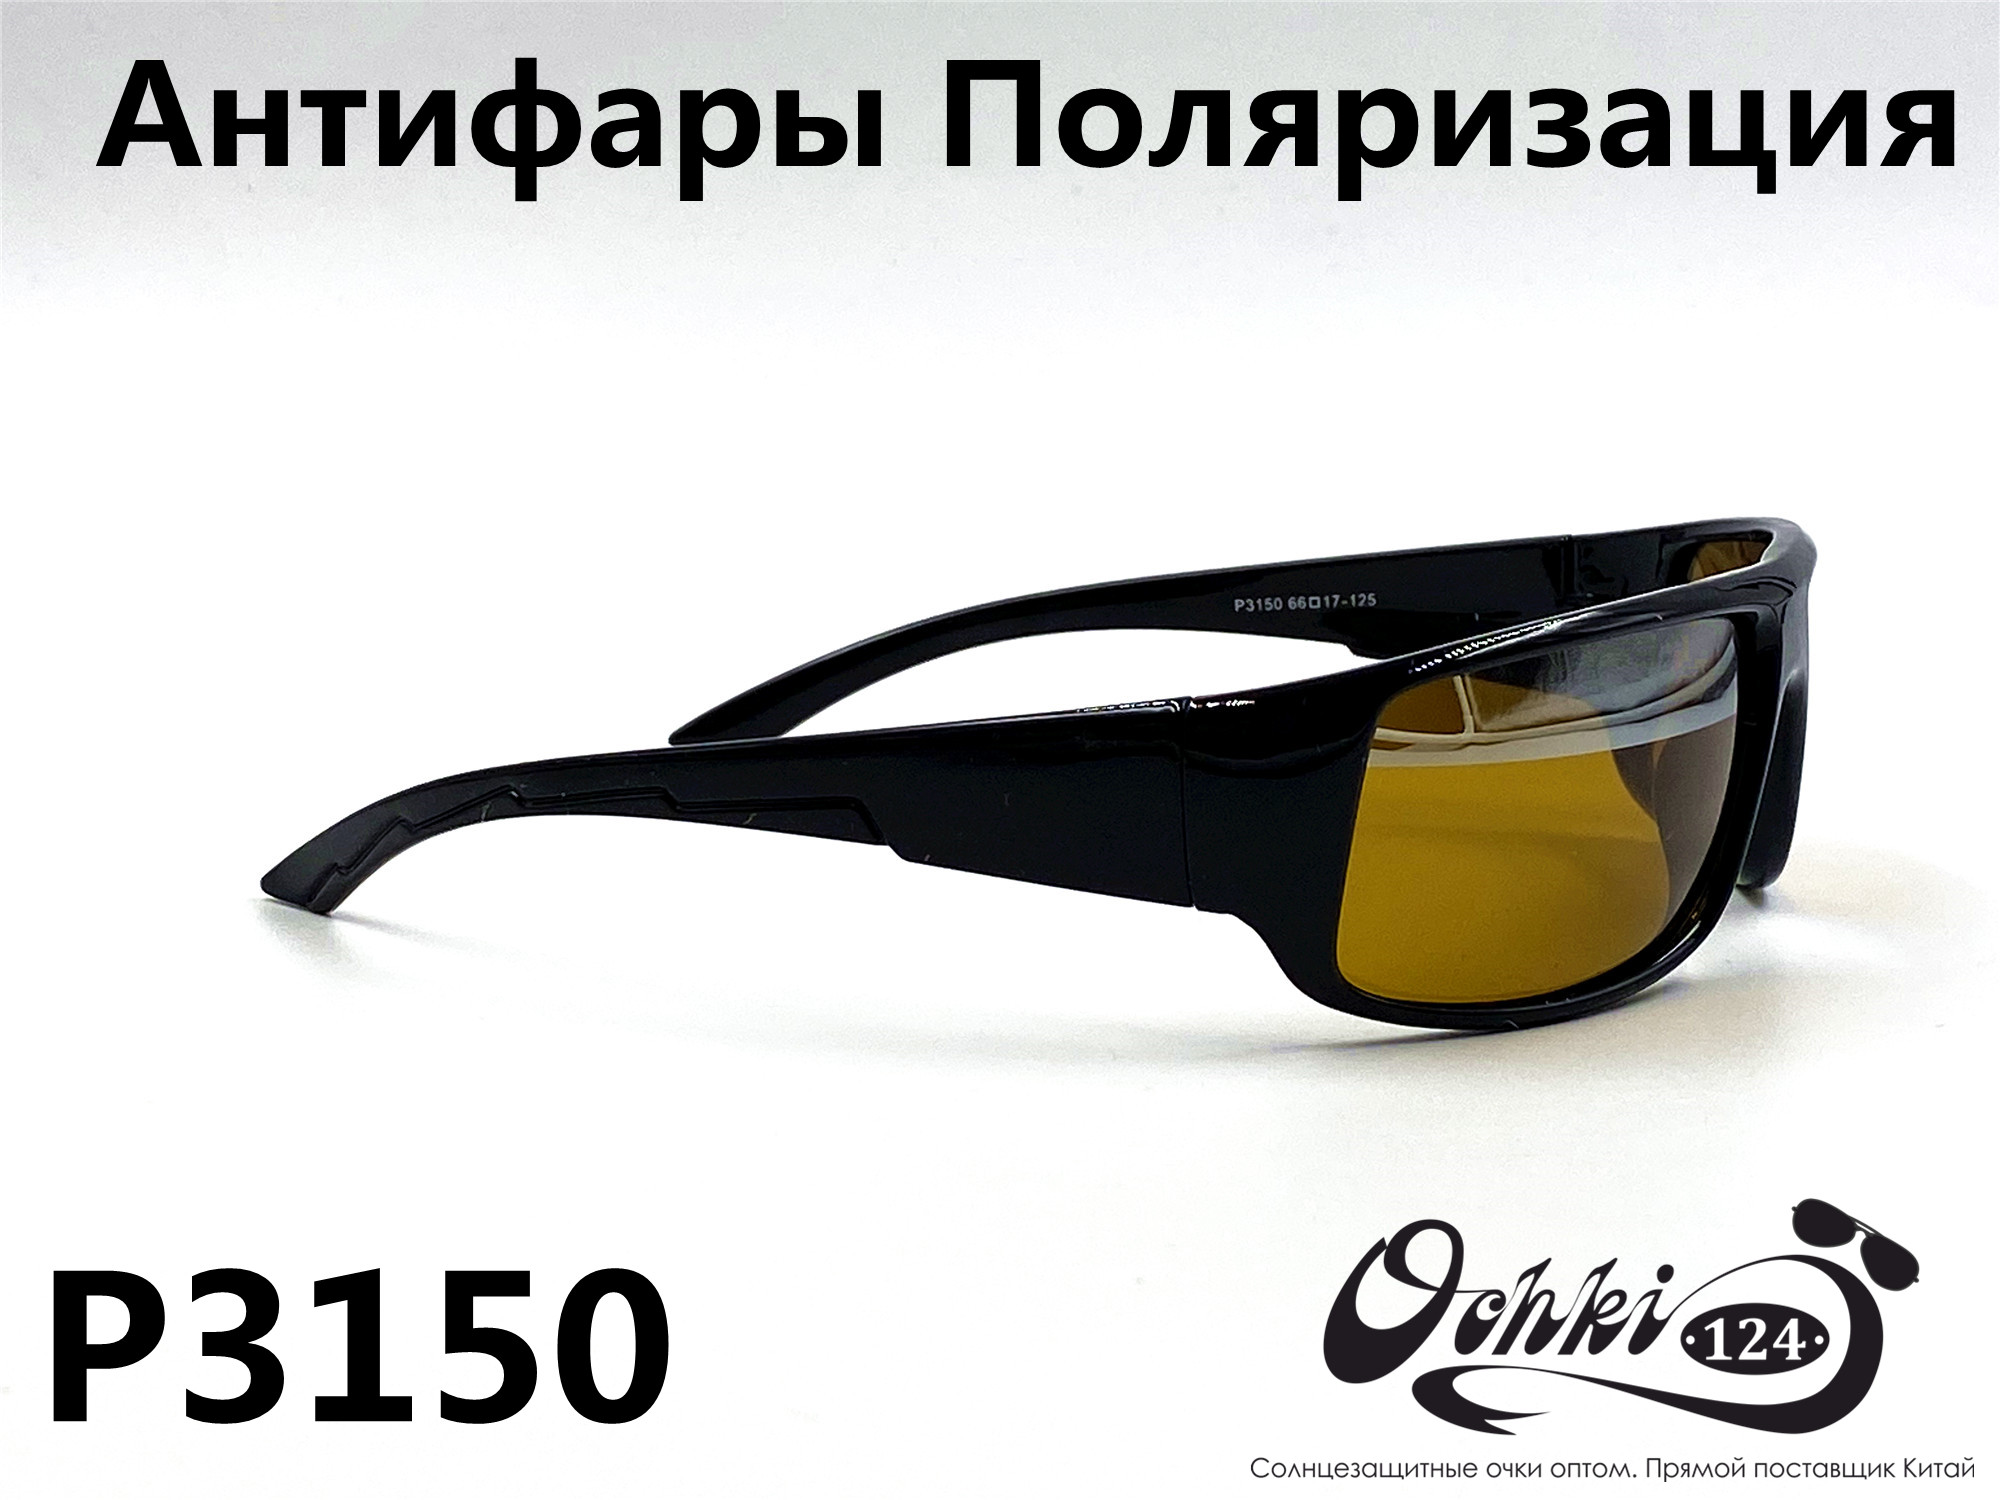  Солнцезащитные очки картинка 2022 Мужские антифары-спорт, с зеркальной полосой, Желтый Polarized P3150-1 